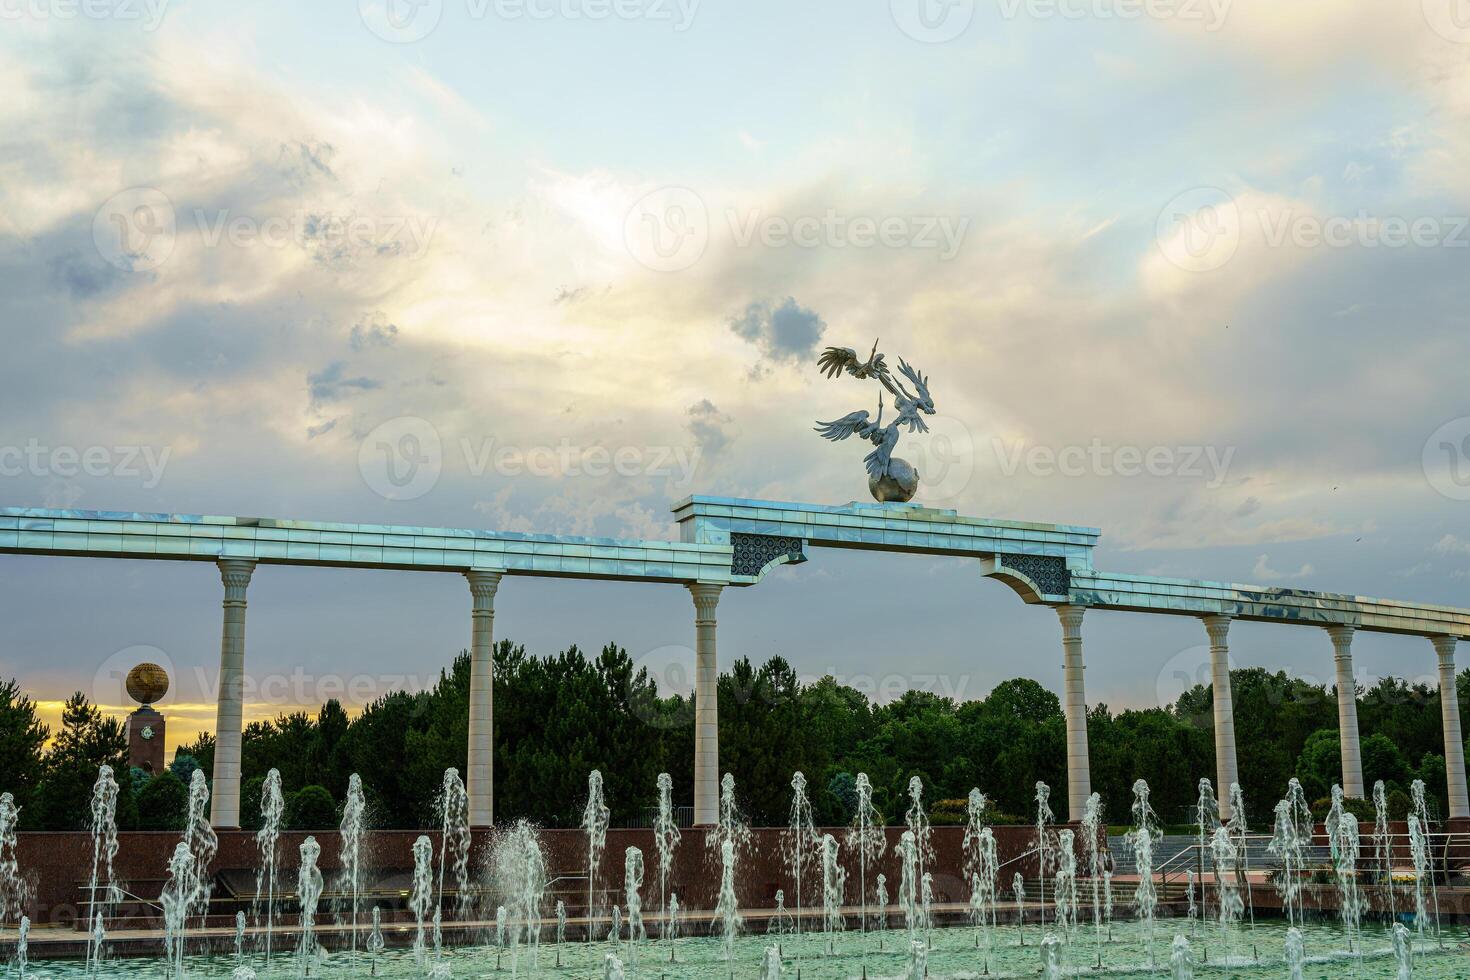 Mémorial et Lignes de fontaines illuminé par lumière du soleil à le coucher du soleil ou lever du soleil dans le indépendance carré à heure d'été, tachkent. photo